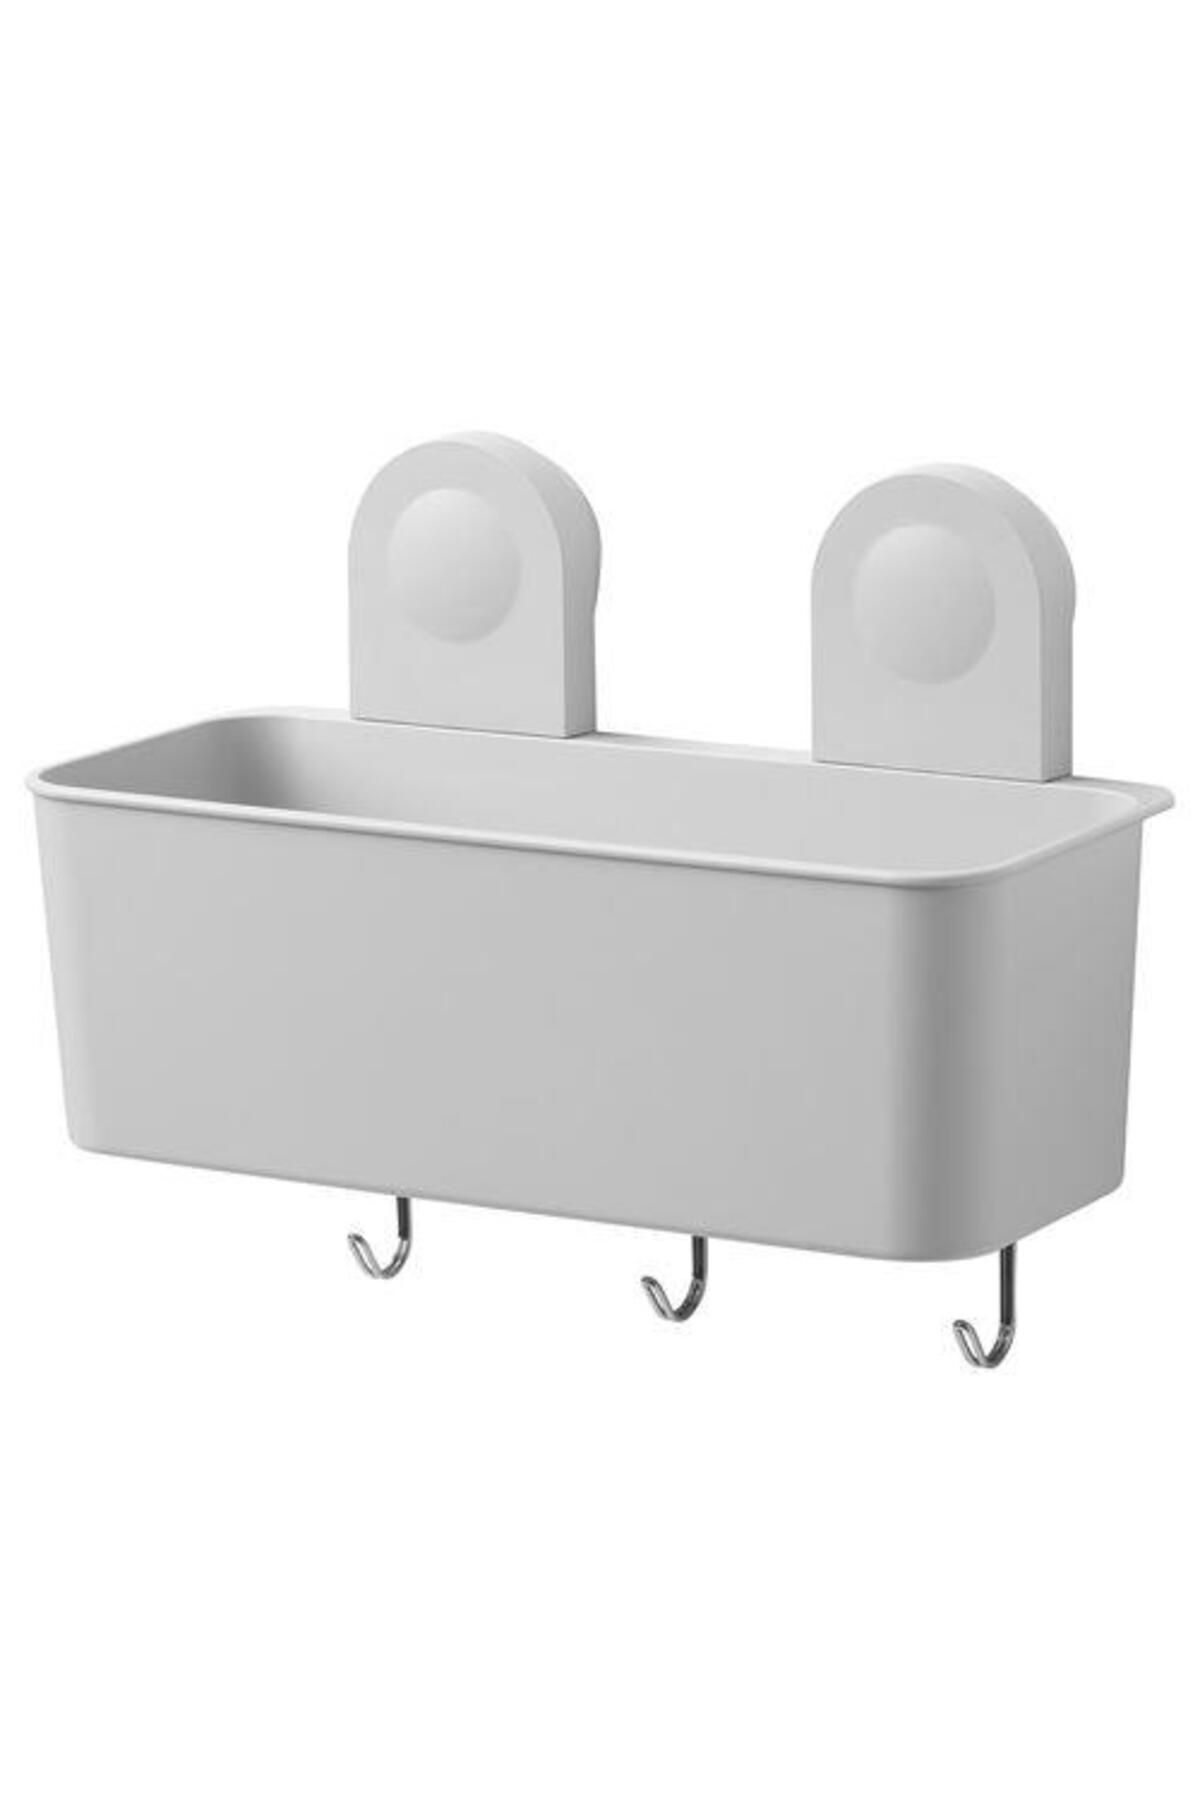 IKEA Vantuzlu Banyo Duş Sepeti 26x21 Cm Meridyendukkan 3 Kancalı-su Delikli Banyo Dekorasyonu-sepeti